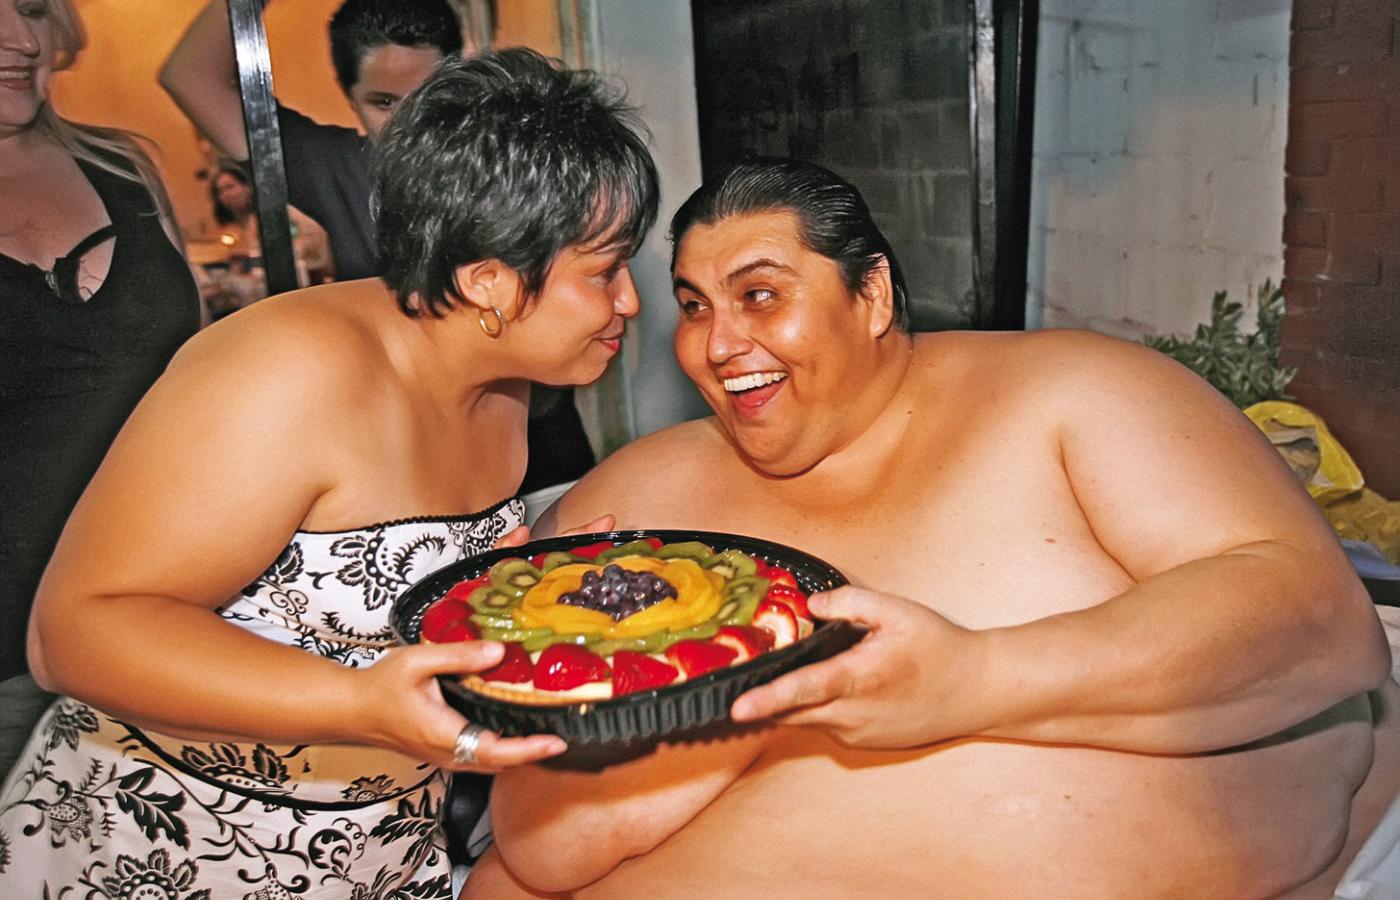 Jeden z najbardziej otyłych ludzi na świecie - Meksykanin Manuel Uribe świętuje swoje 43 urodziny, czerwiec 2008 r.